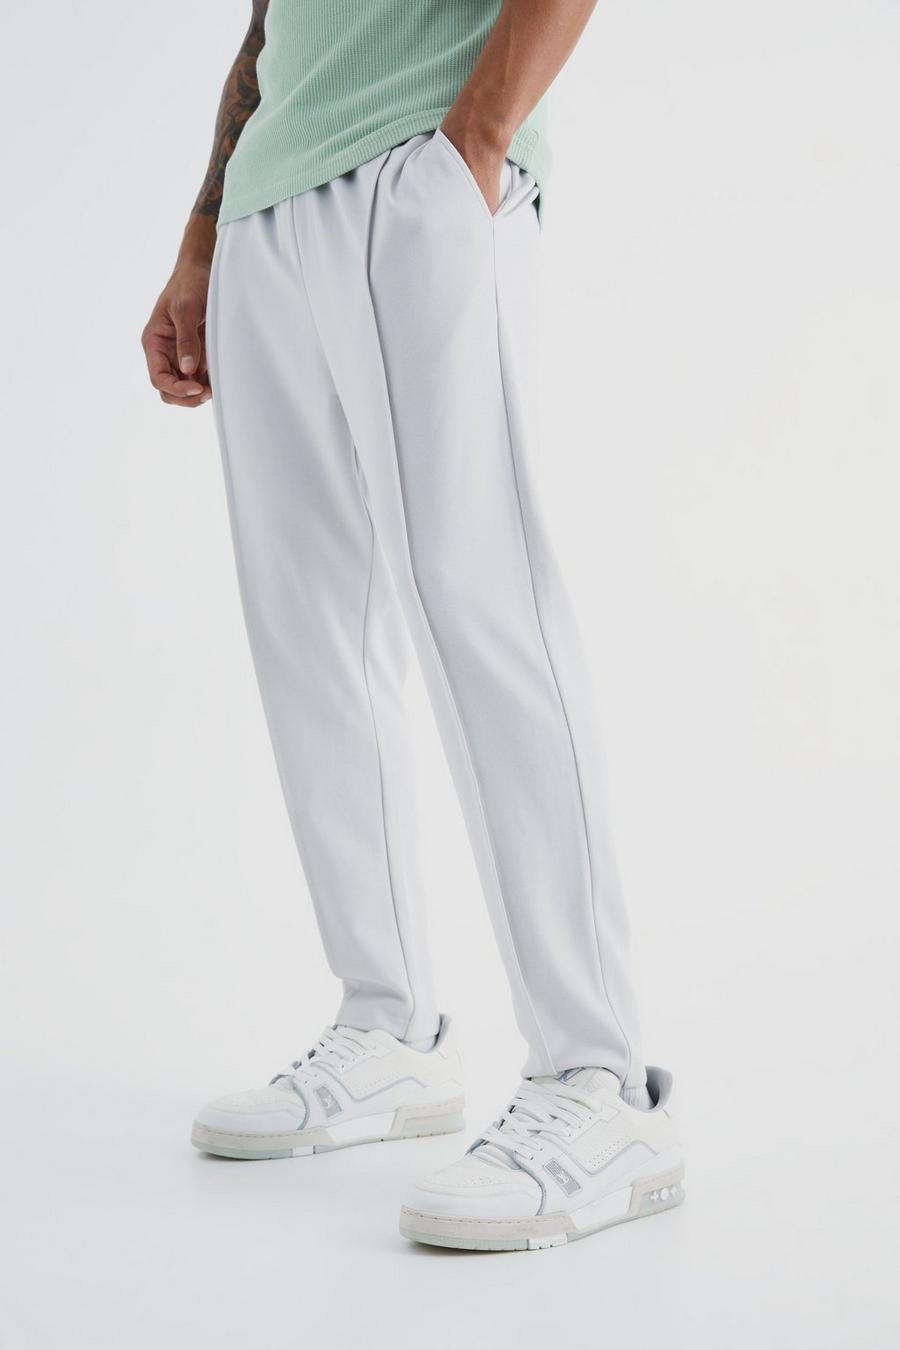 Schmale Slim-Fit Jogginghose mit elastischem Bund, Light grey